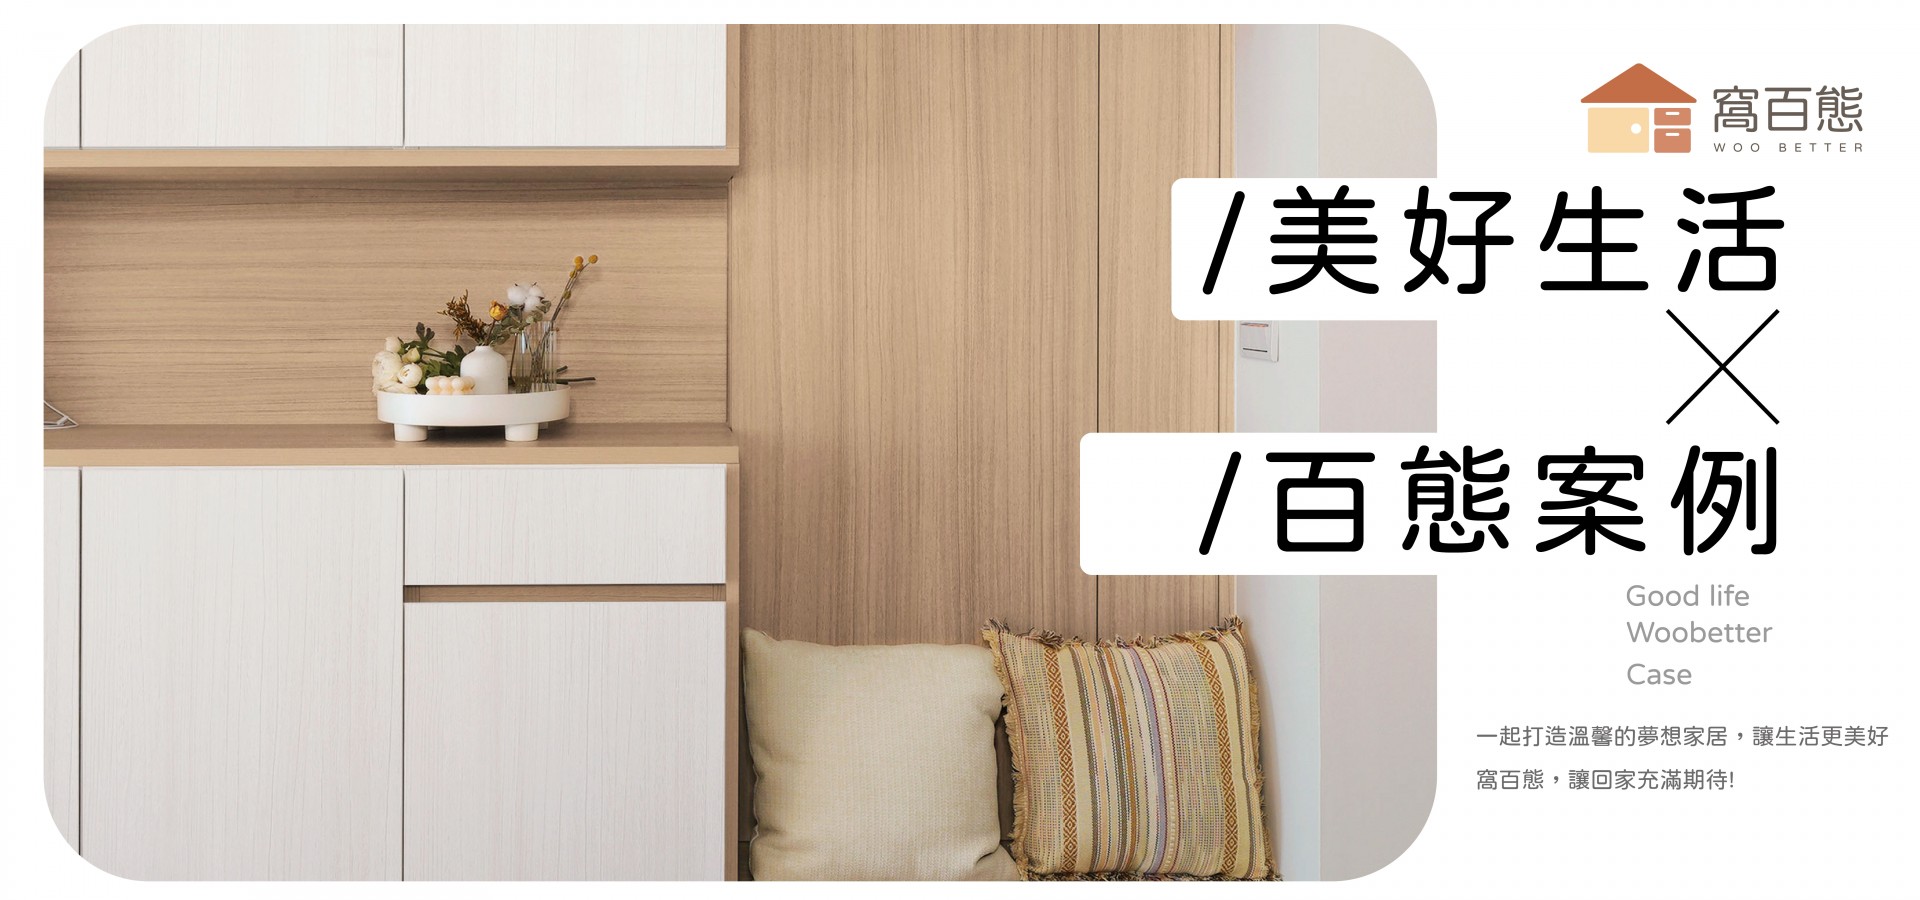 現代居家設計與3種裝潢風格｜窩百態系統家具